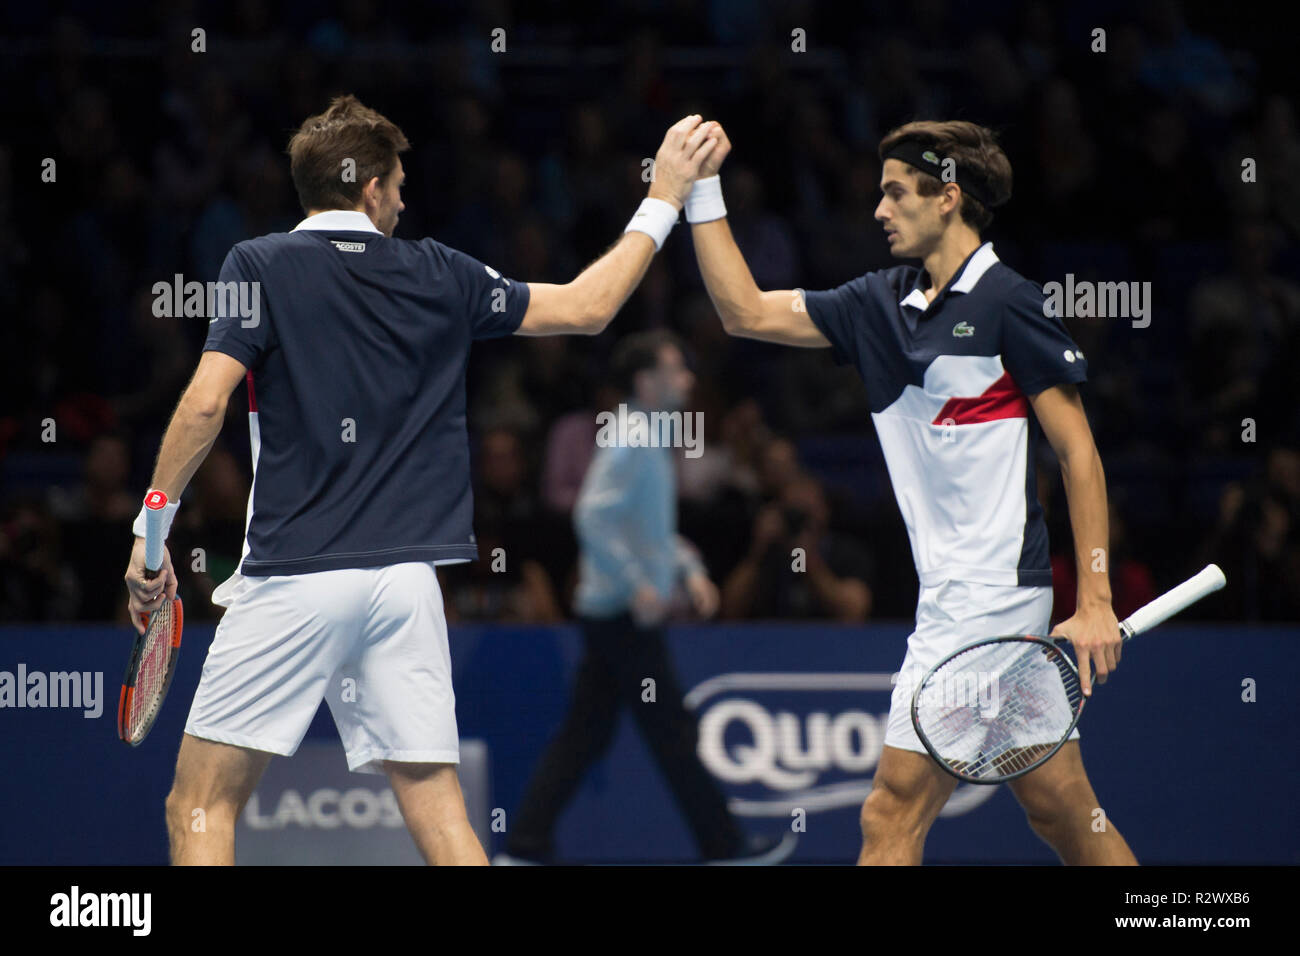 O2, London, UK 18 novembre 2018. Finales ATP Nitto Jour 8 finale du match. Credit : Malcolm Park/Alamy. Banque D'Images